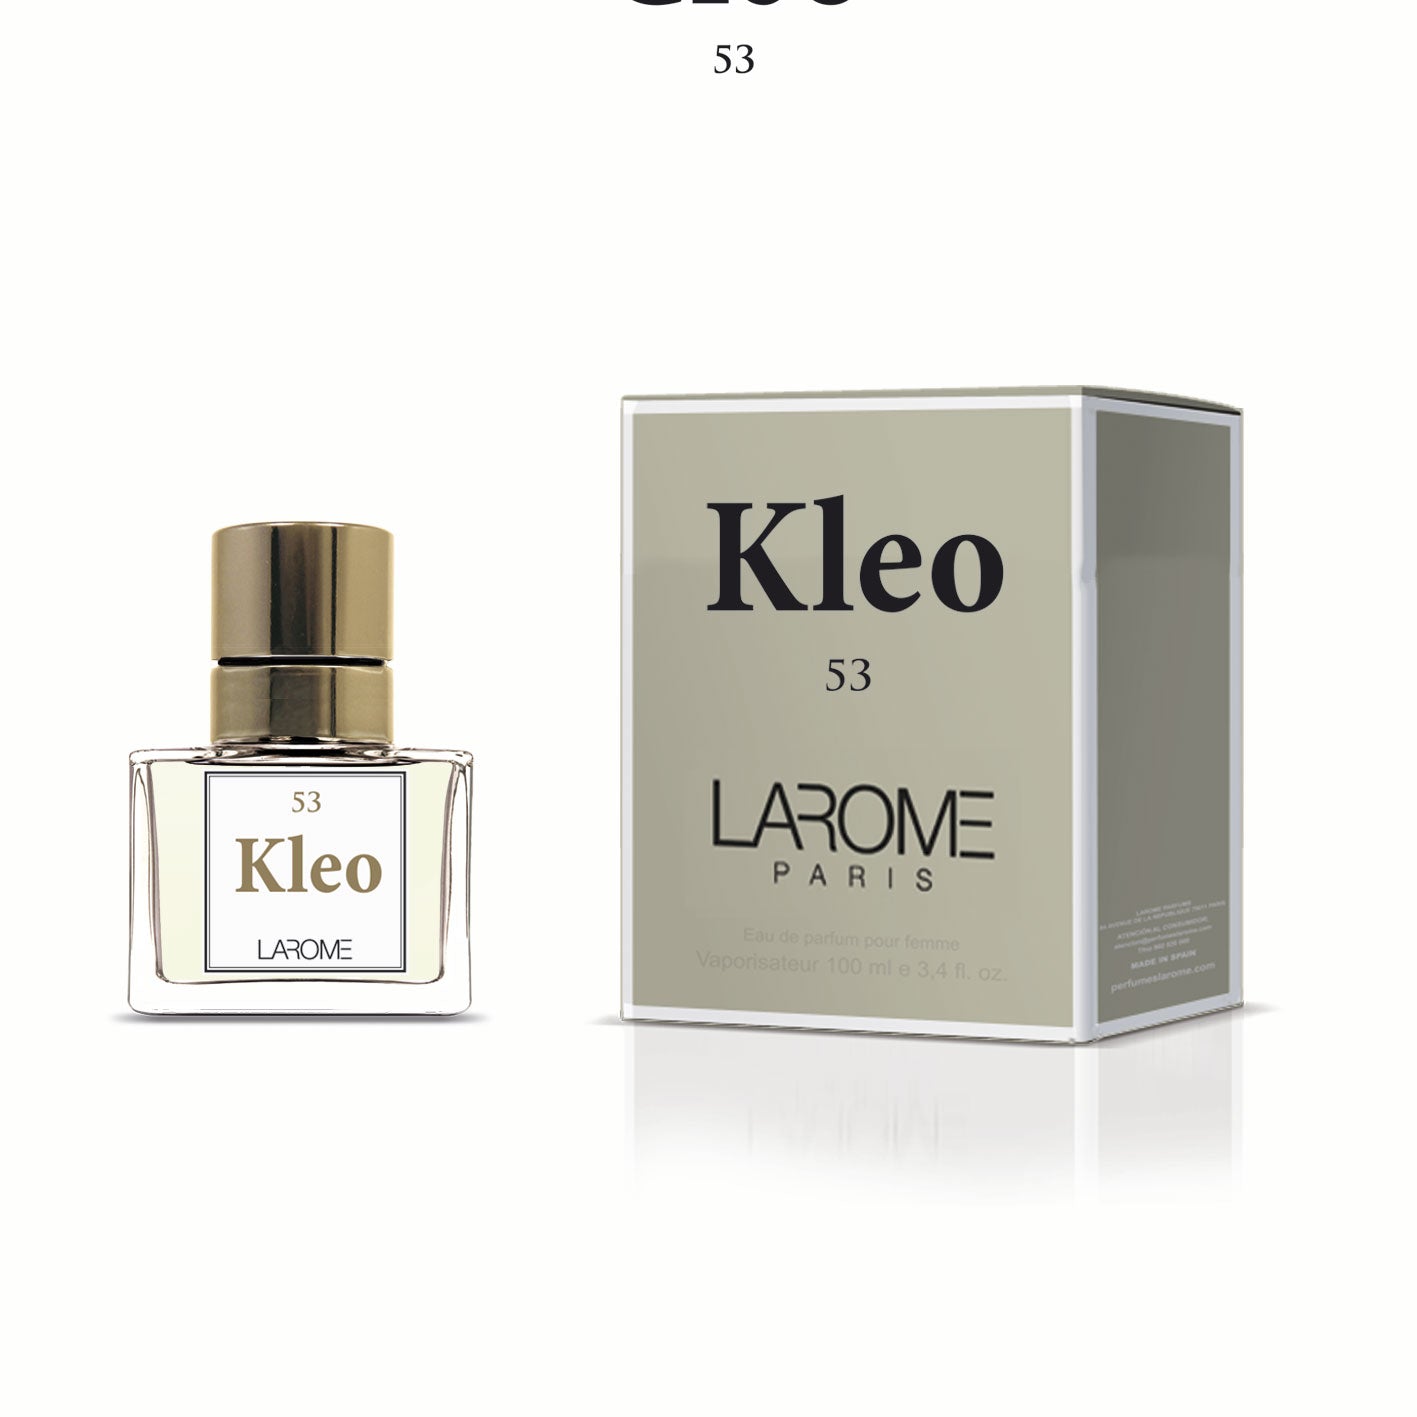 KLEO 53F by LAROME geïnspireerd door Chloé